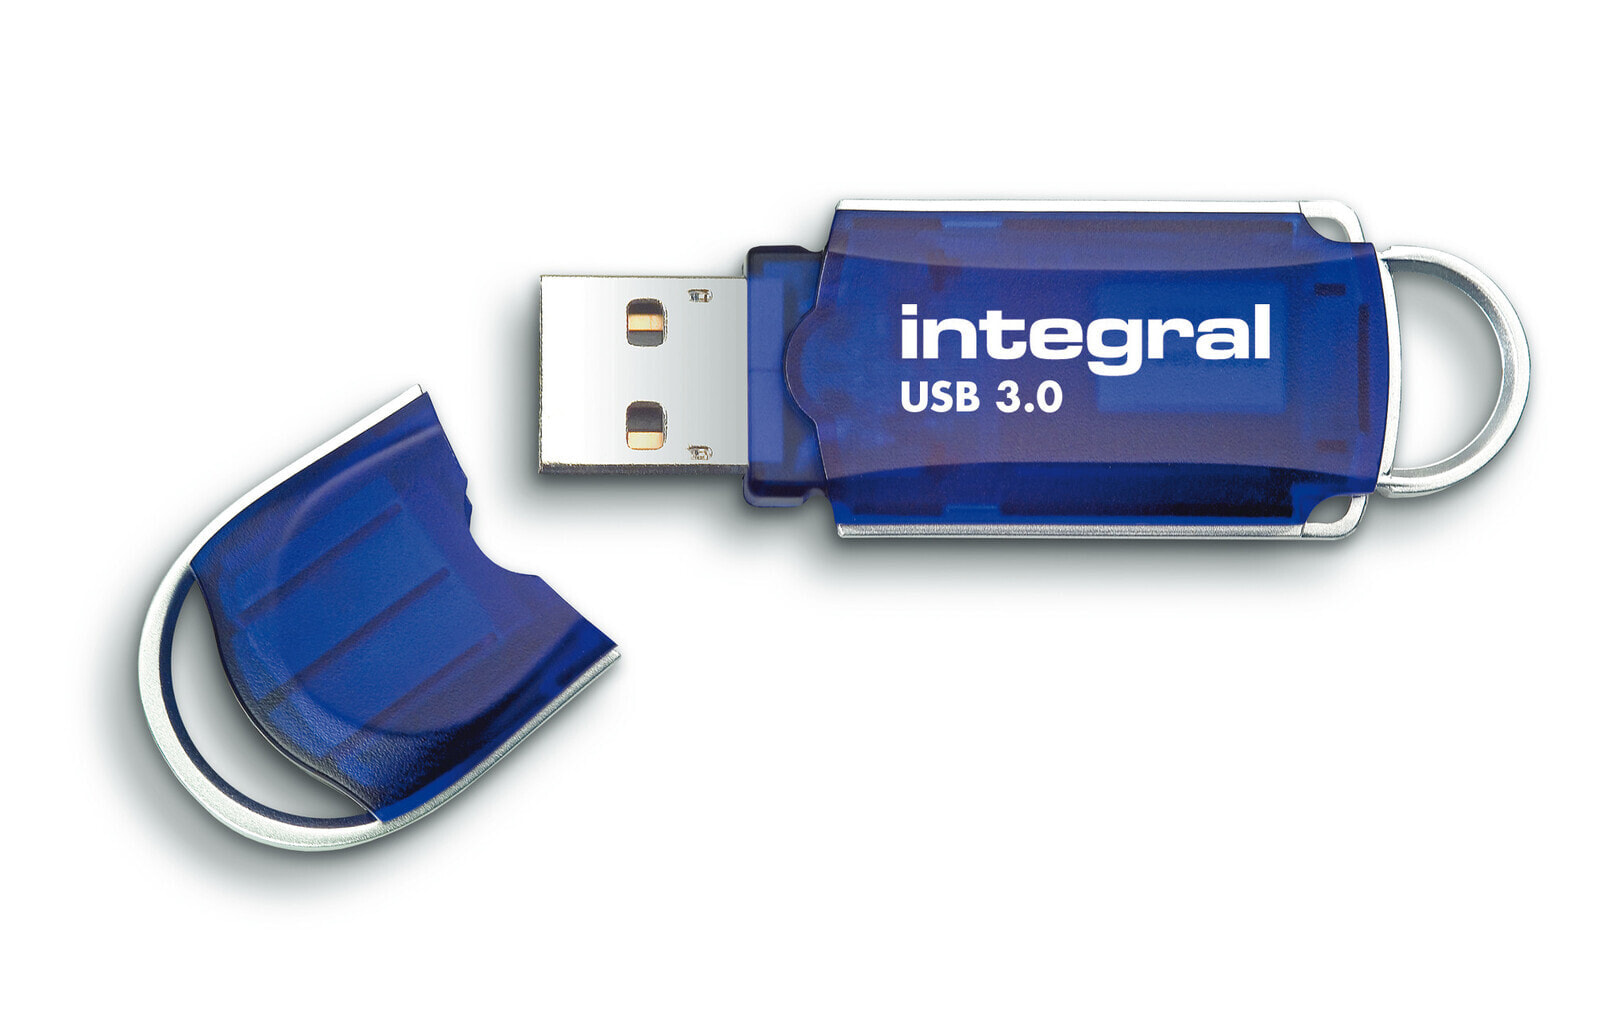 Integral 16GB USB3.0 DRIVE COURIER BLUE UP TO R-80 W-10 MBS USB флеш накопитель USB тип-A 3.2 Gen 1 (3.1 Gen 1) Синий, Серебристый INFD16GBCOU3.0